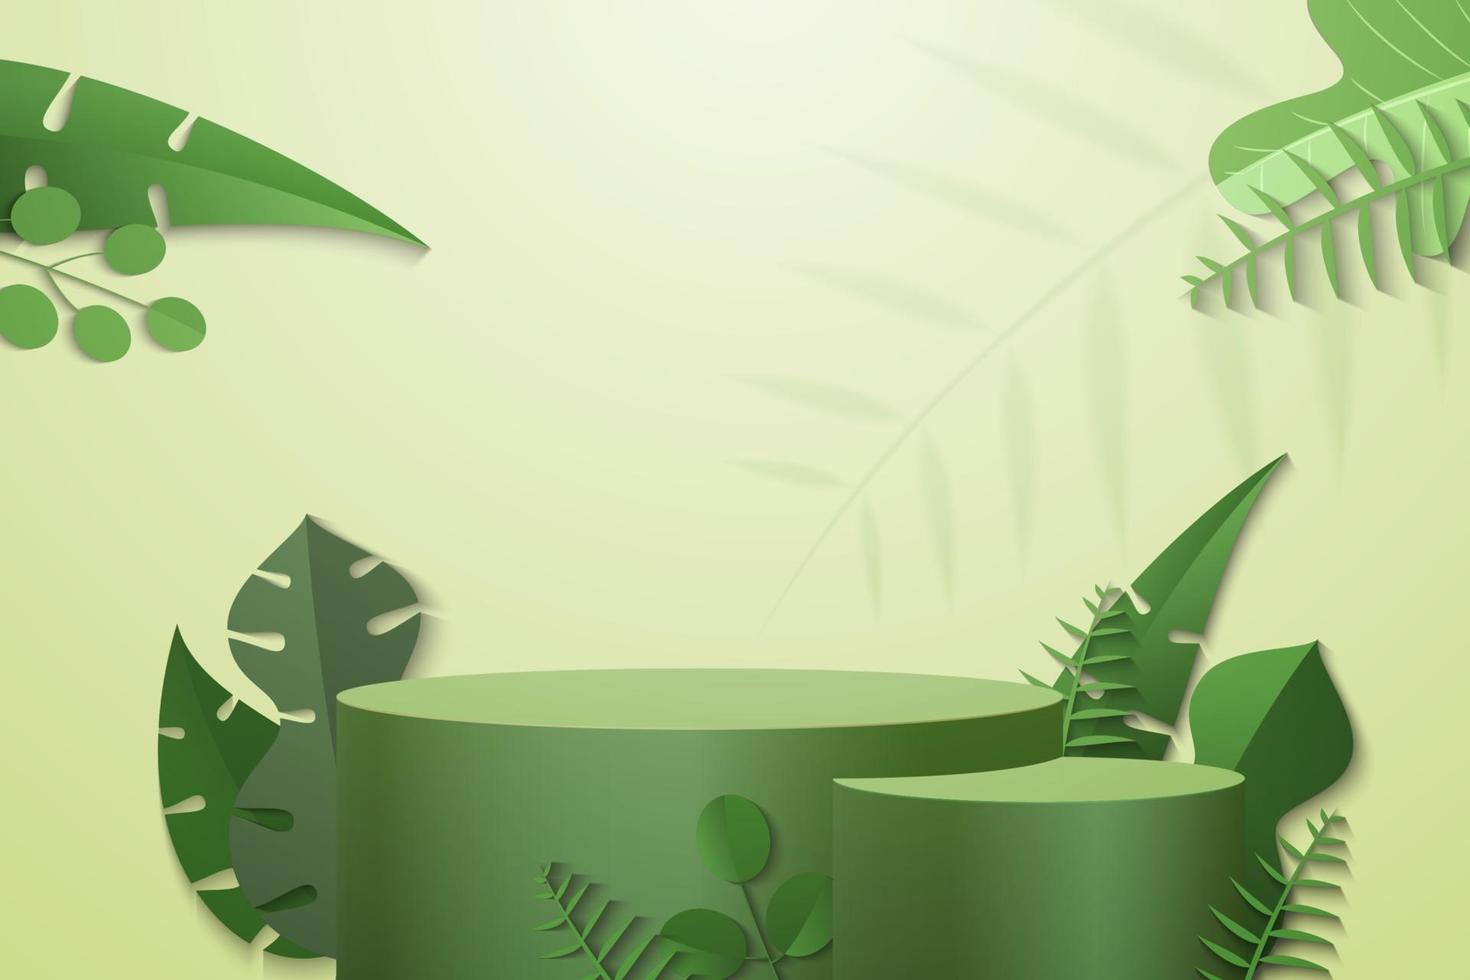 Zylinderpodest in grünem Hintergrund mit grünen Pflanzenblättern vektor